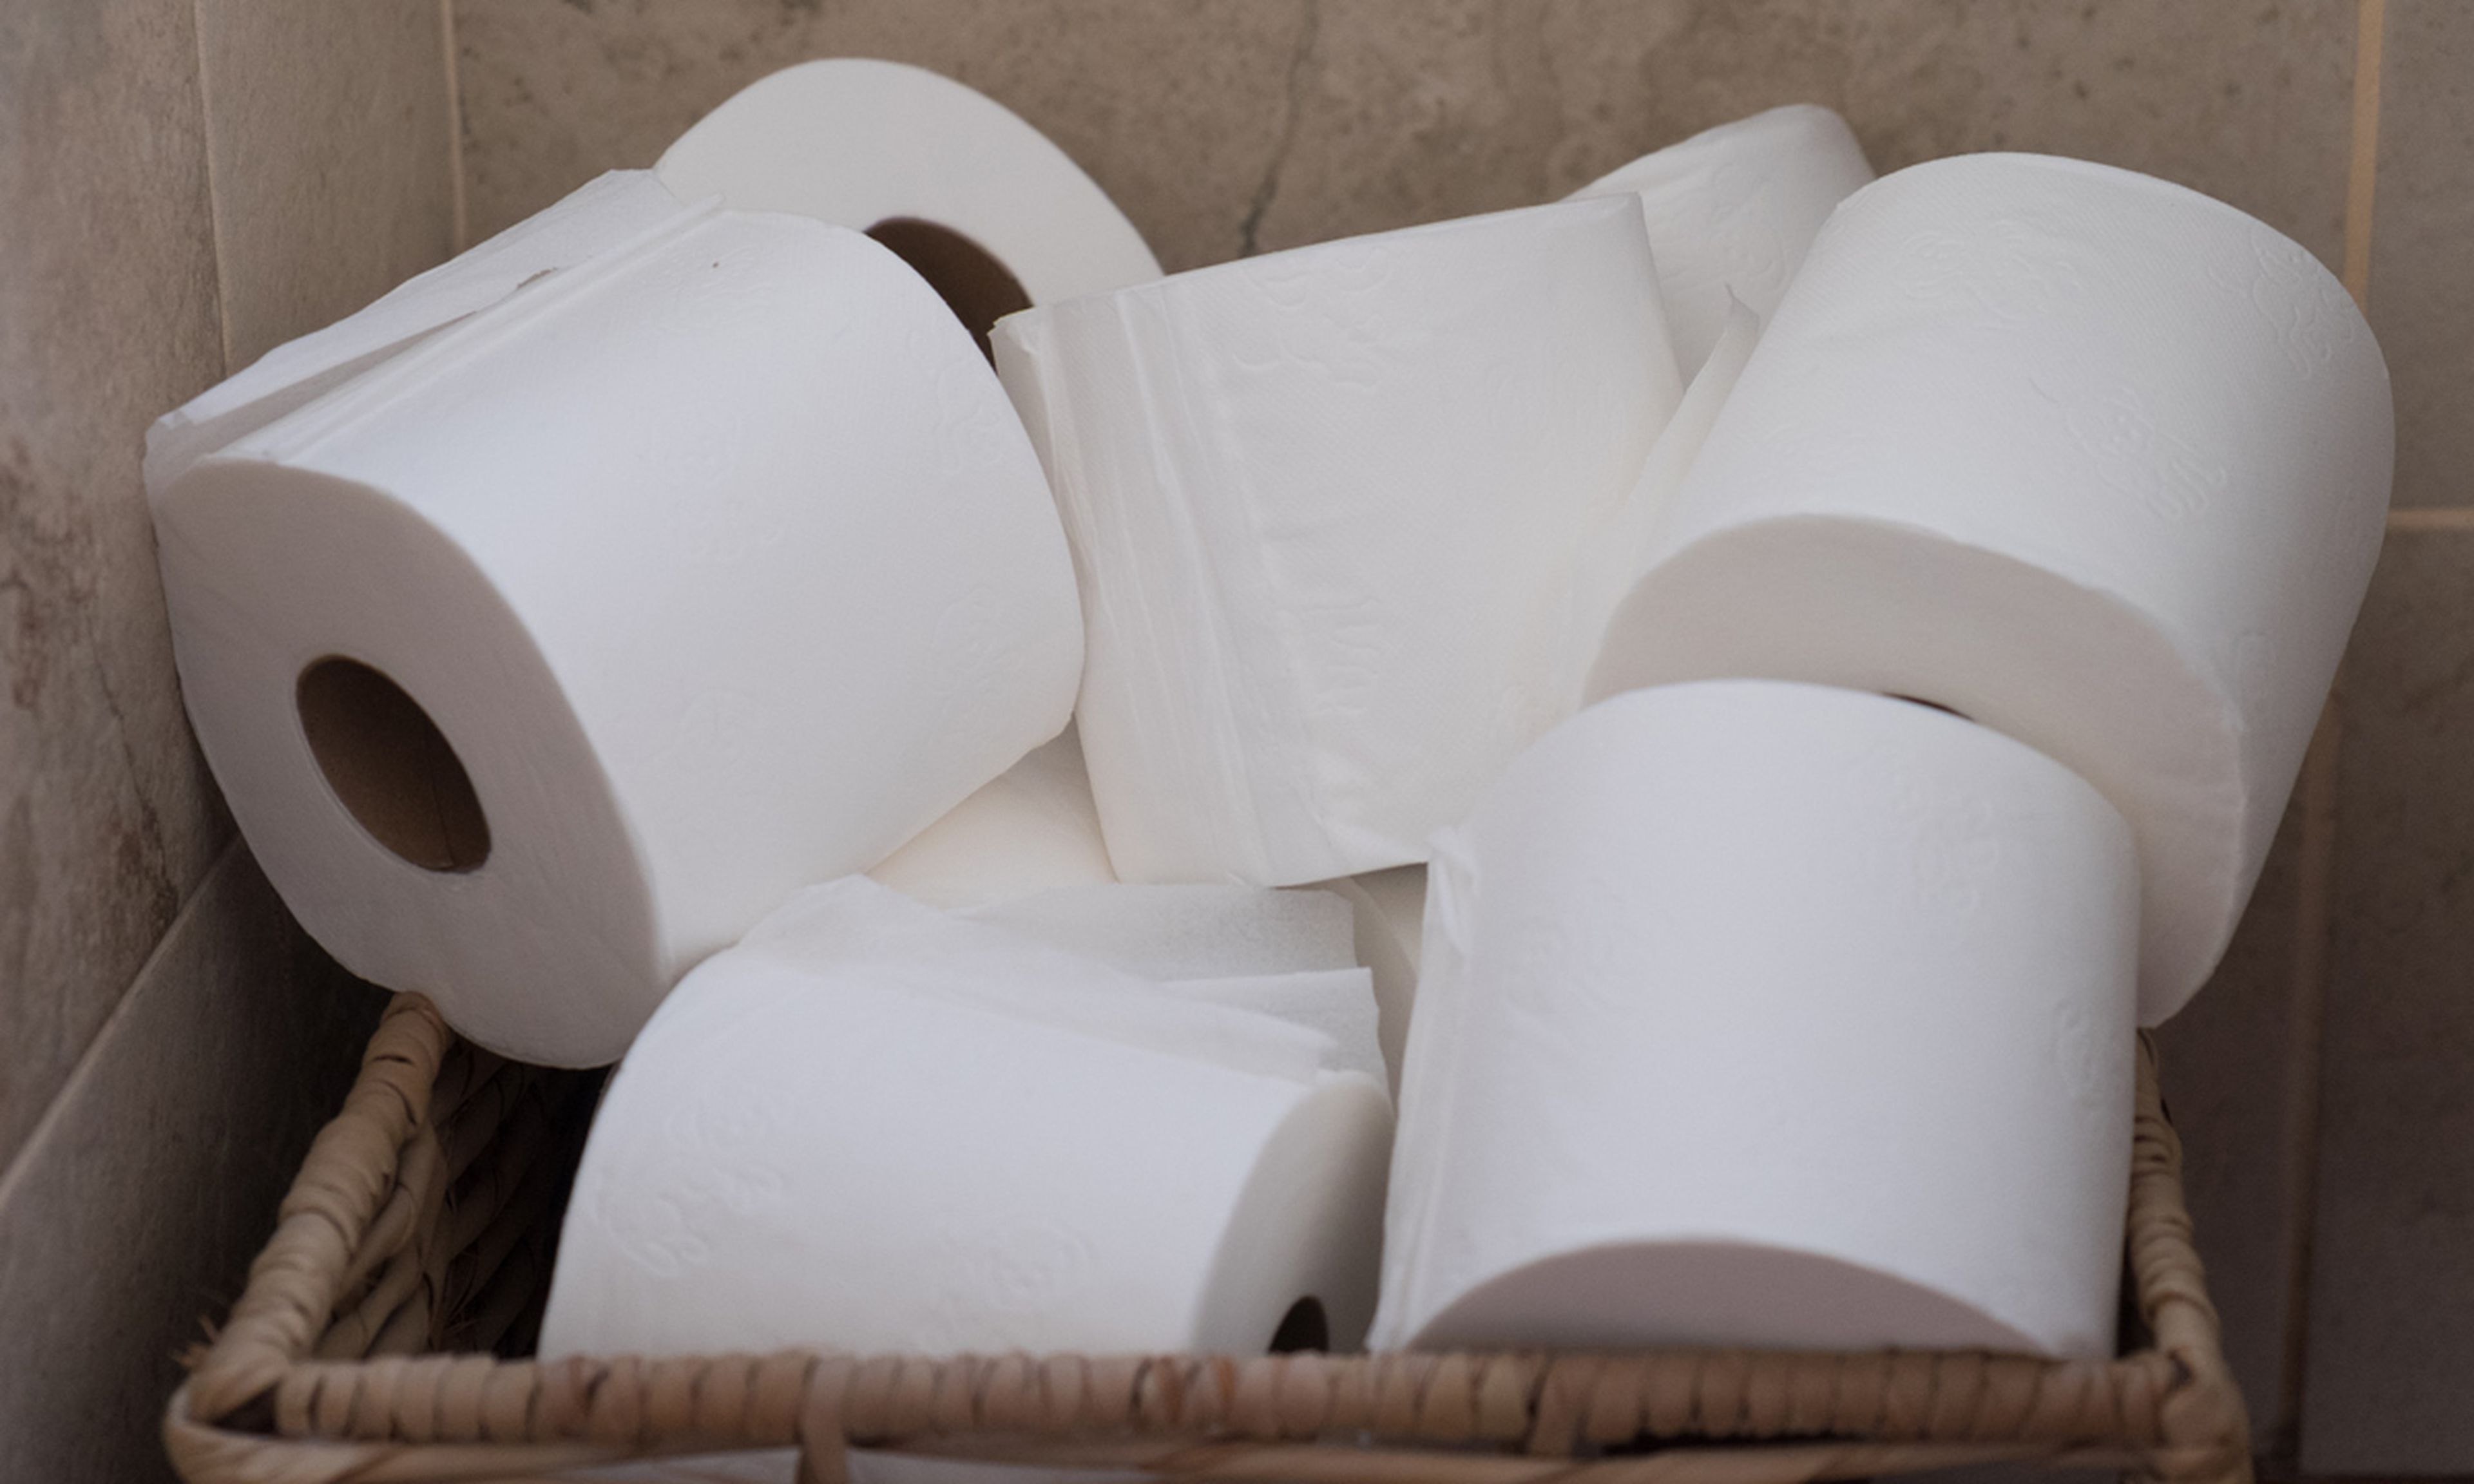 El papel higiénico y el de cocina fue uno de los productos más demandados en todos los supermercados la semana pasada.